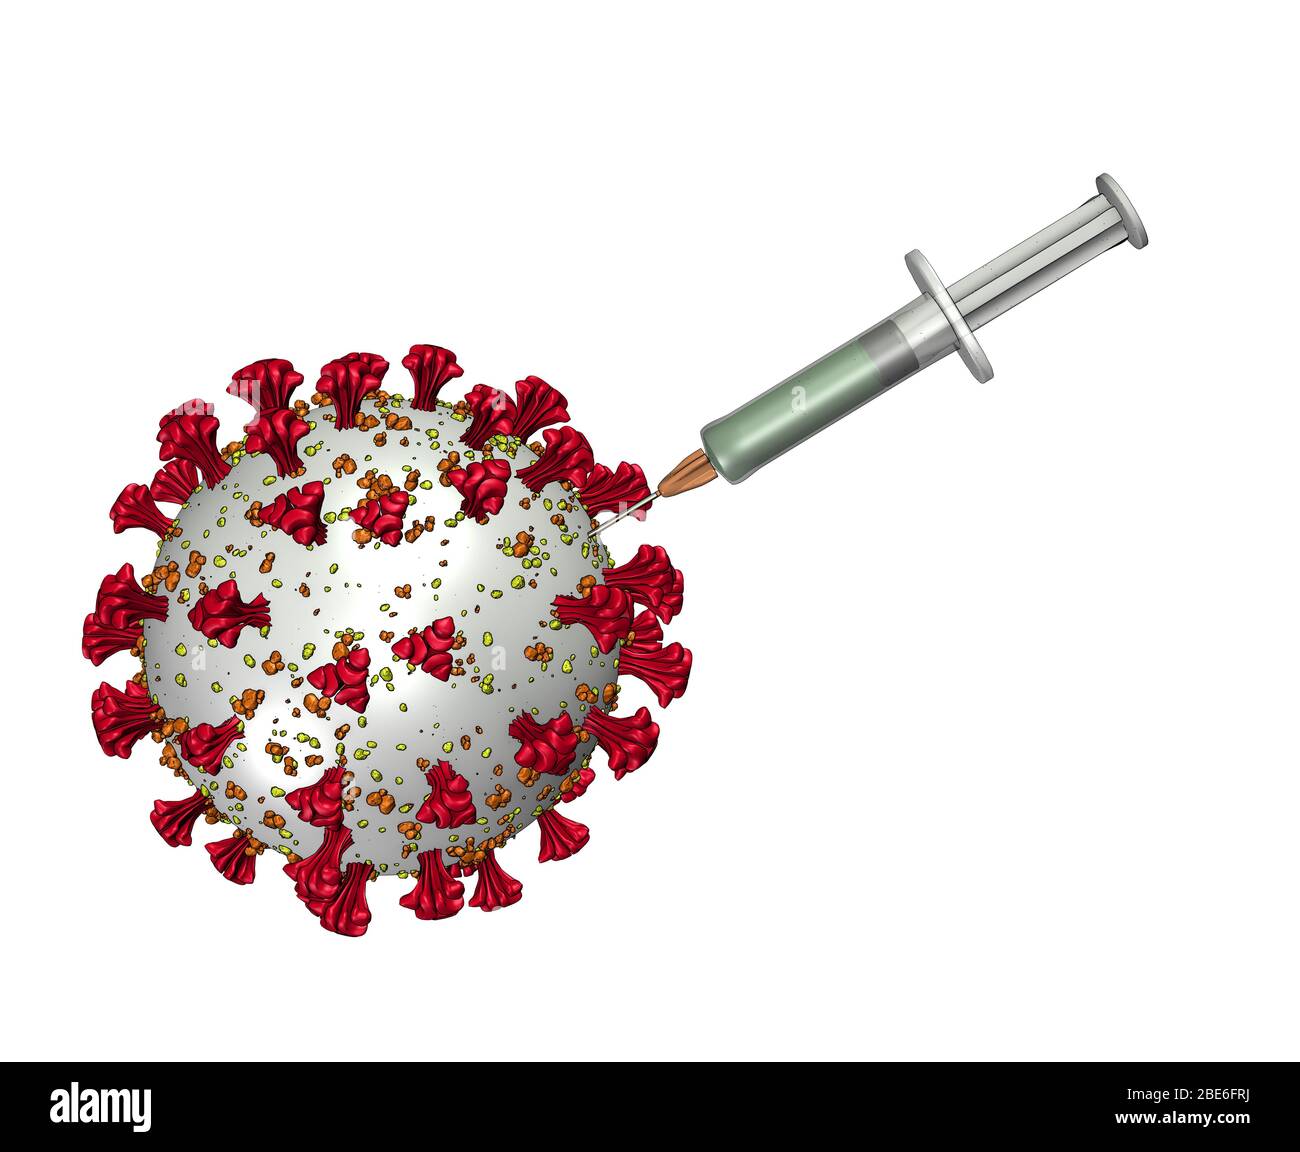 Rappresentazione artistica Coronavirus 2 / 3D-rendering des Coronavirus Foto Stock